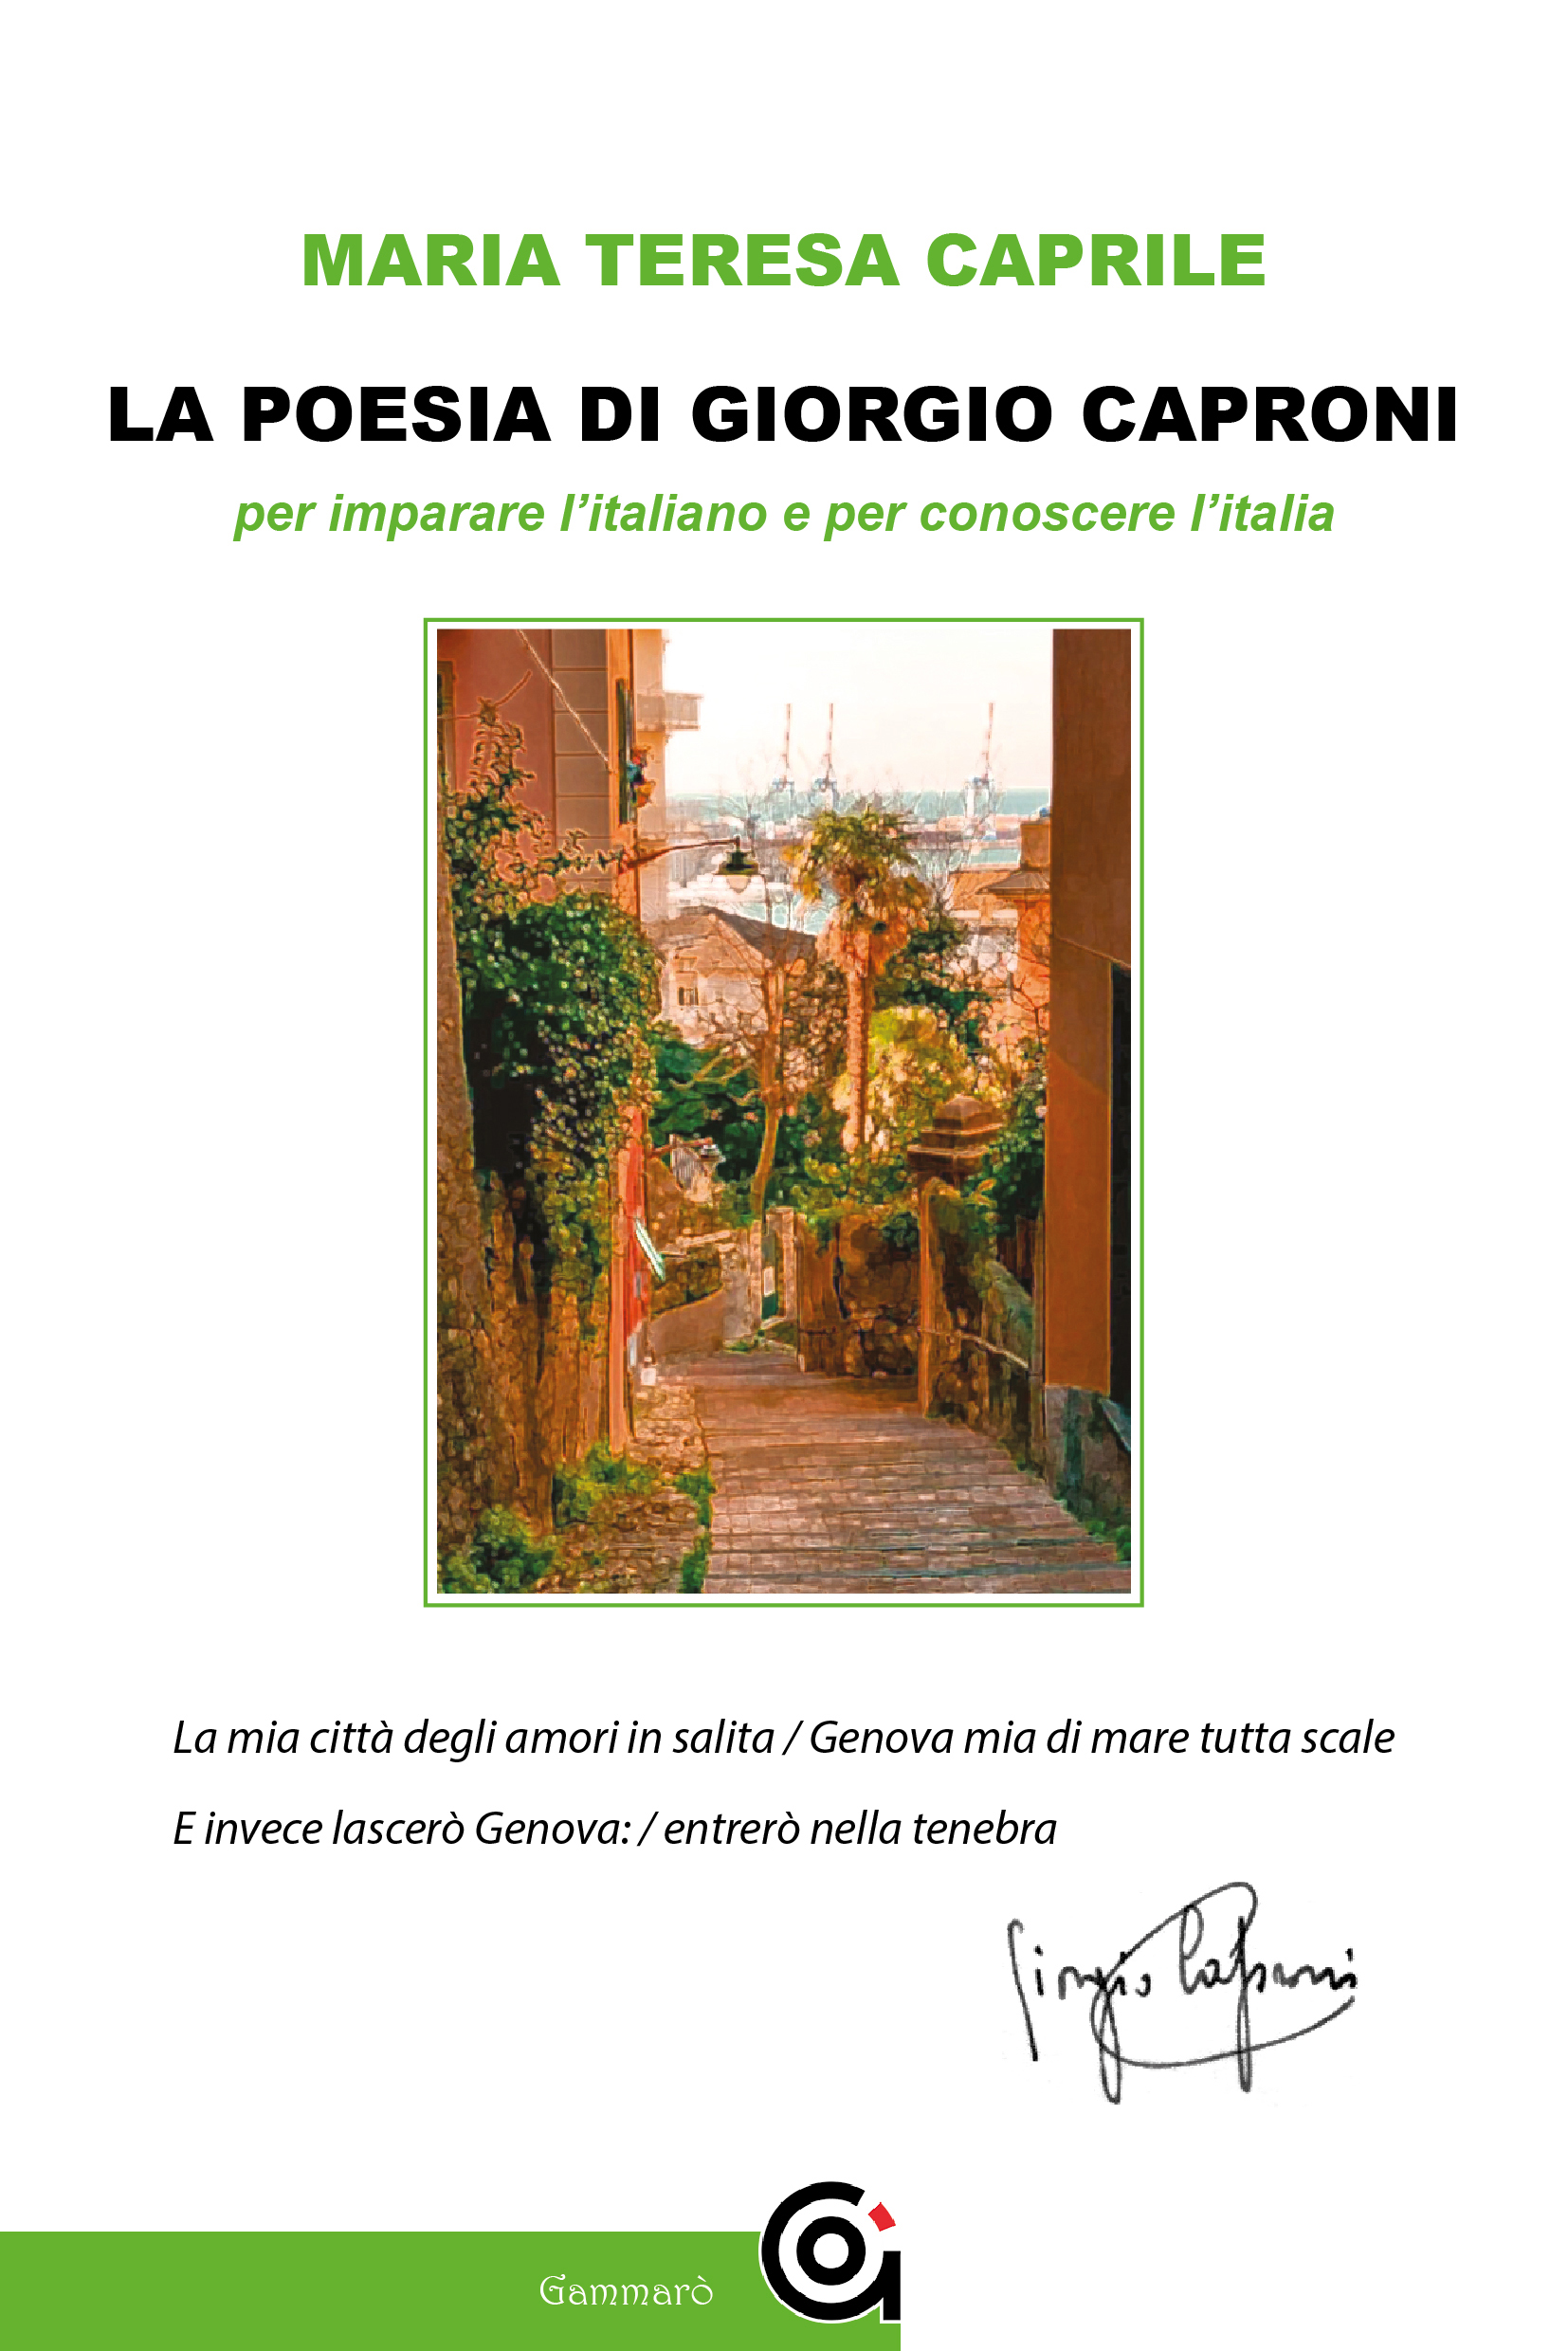 La poesia di Giorgio Caproni per imparare l’italiano e conoscere l’Italia. La proposta di Maria Teresa Caprile